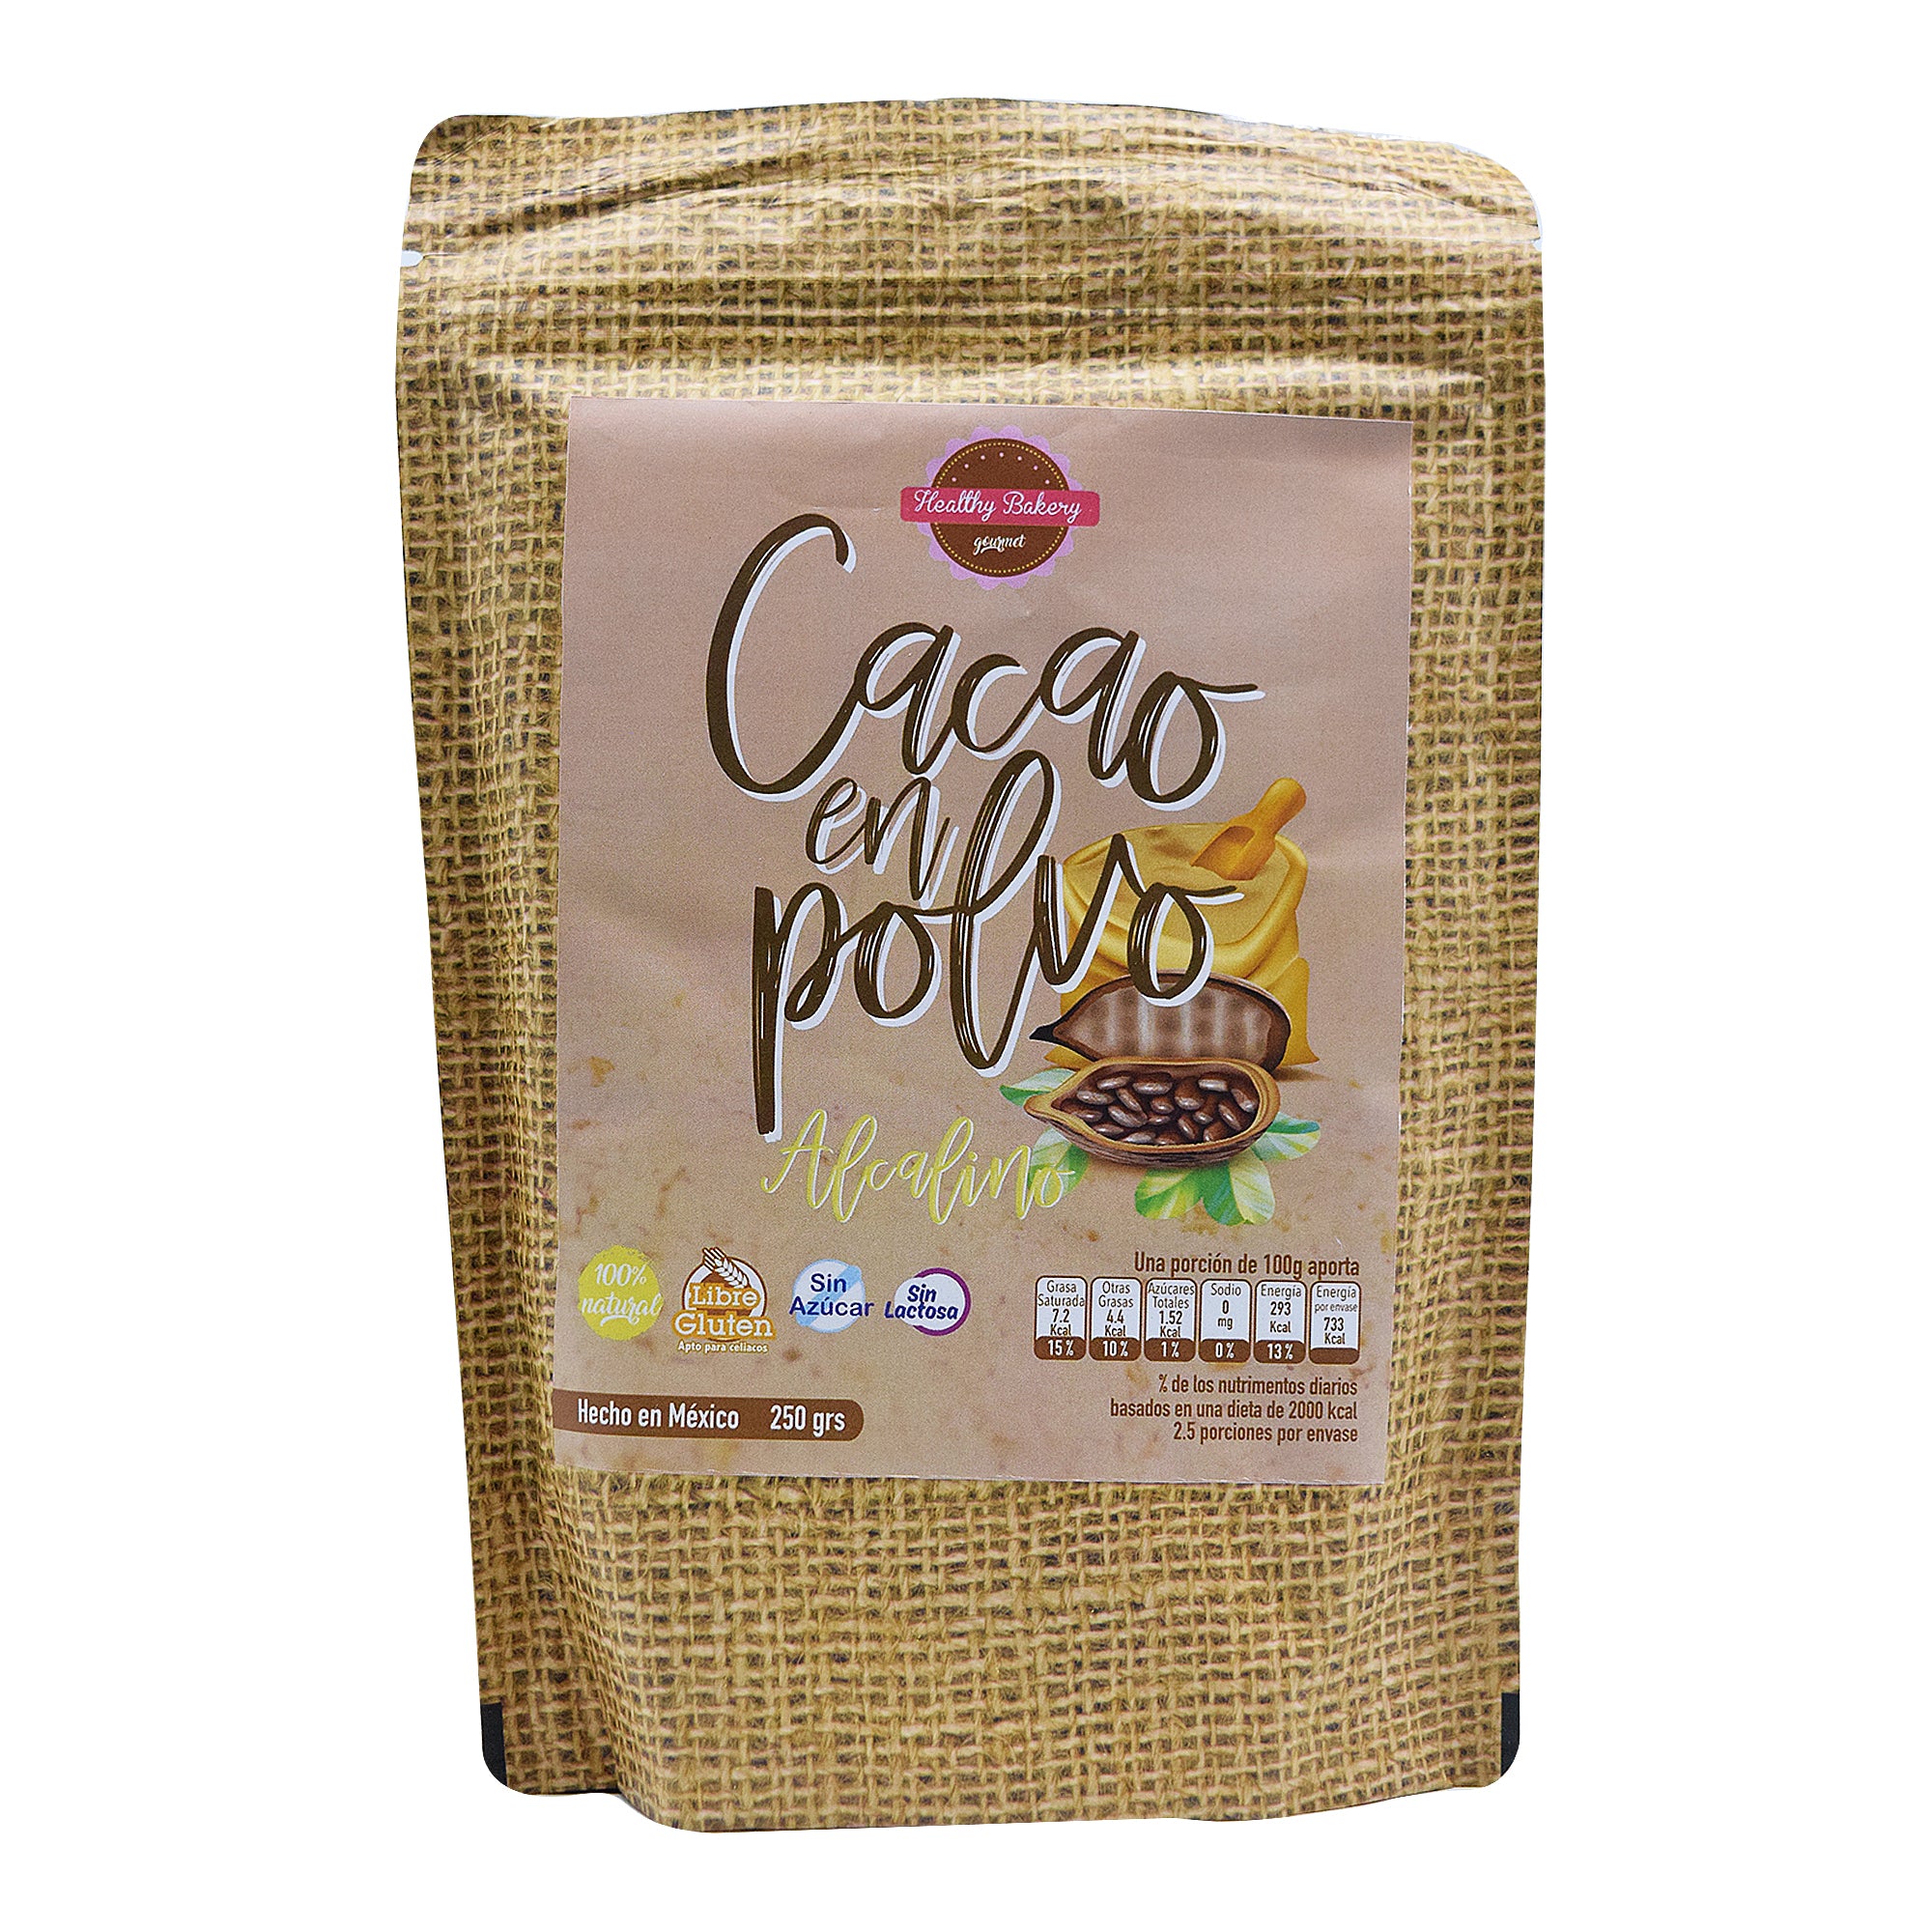 Cacao en polvo alcalino 250 g